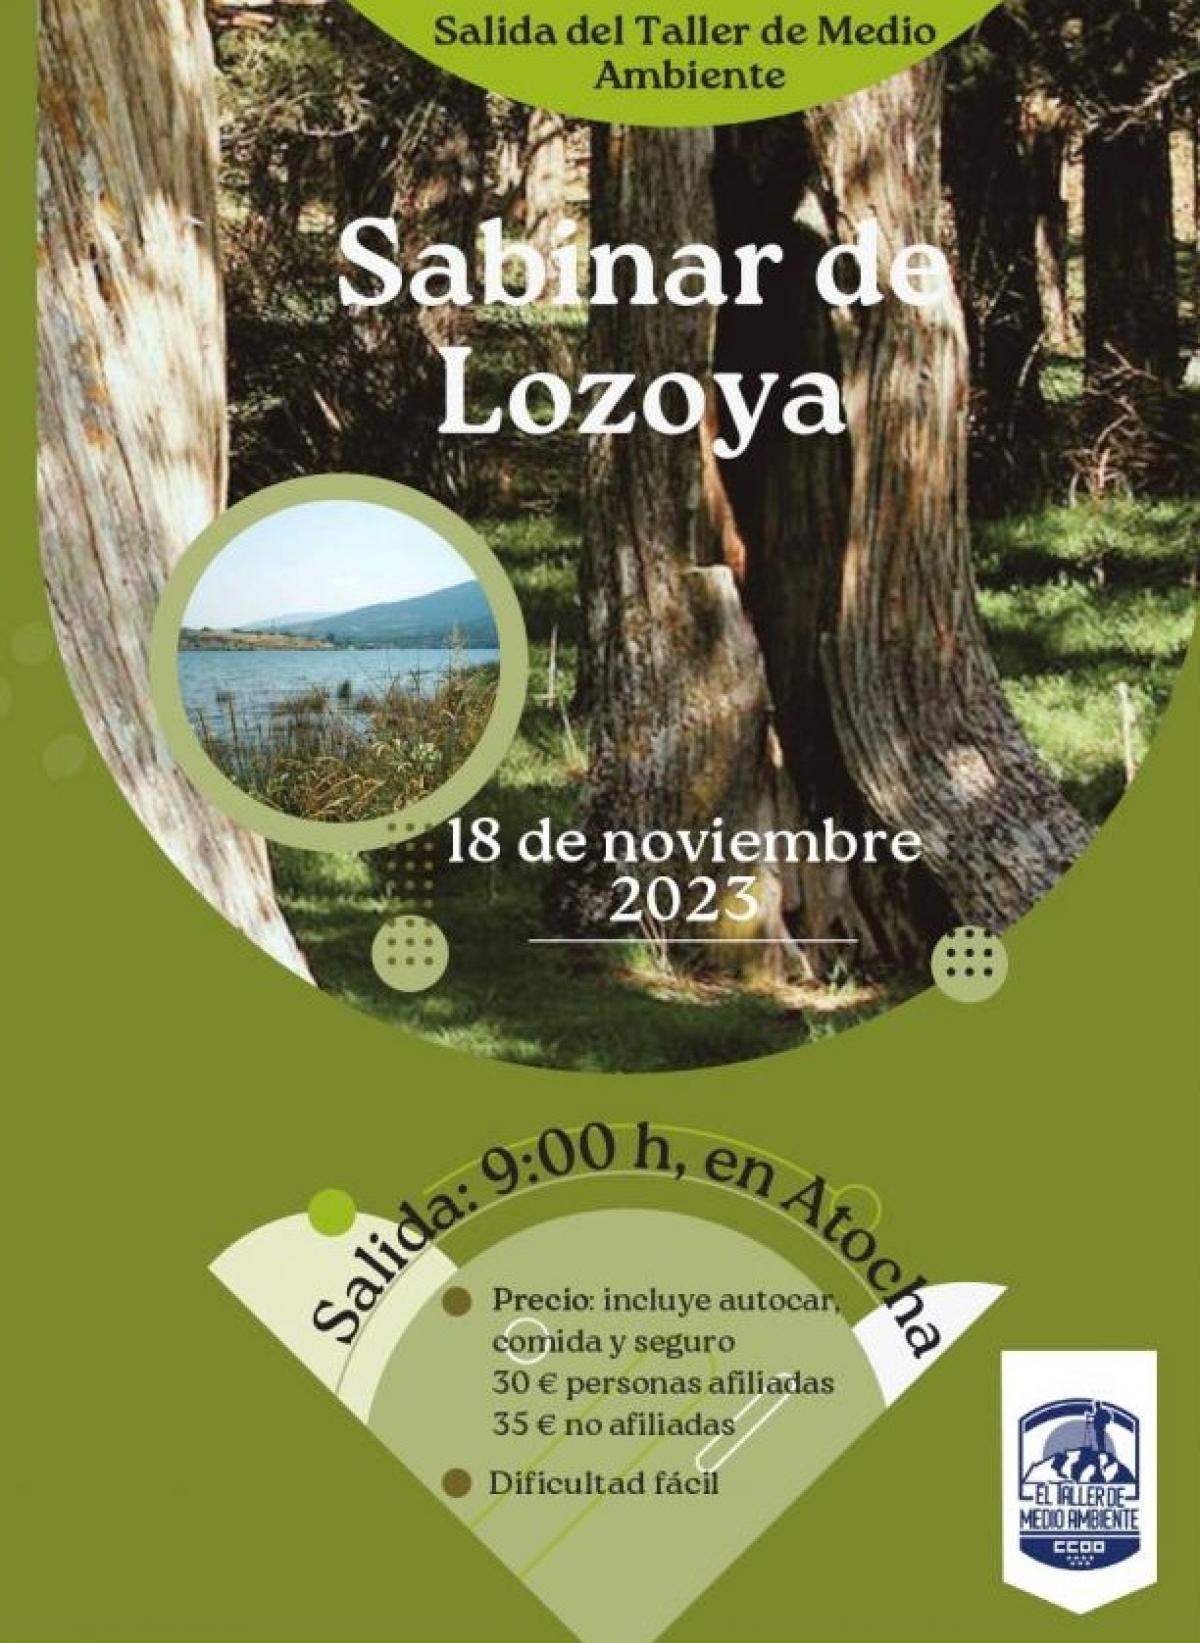 El Taller de Medio Ambiente, en el Sabinar de Lozoya